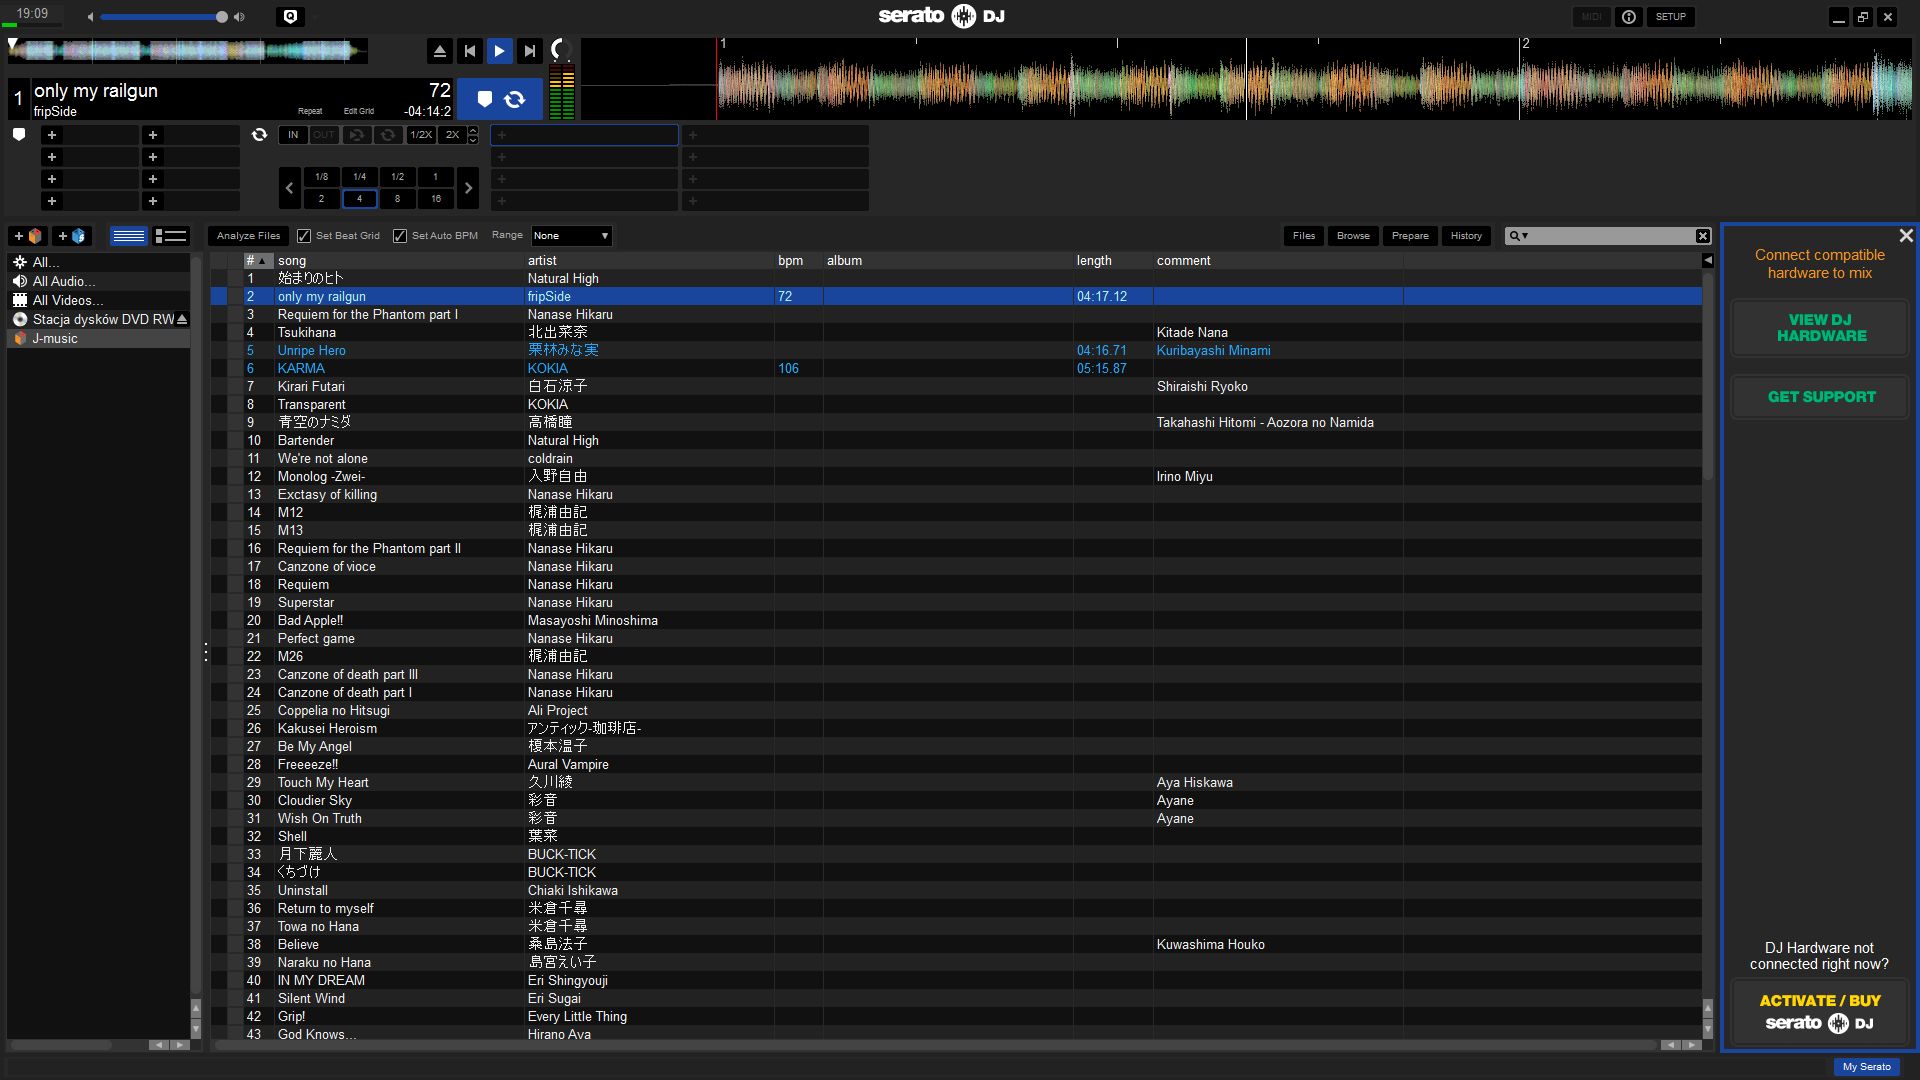 Serato DJ Pro 3.0.12.266 download the last version for apple